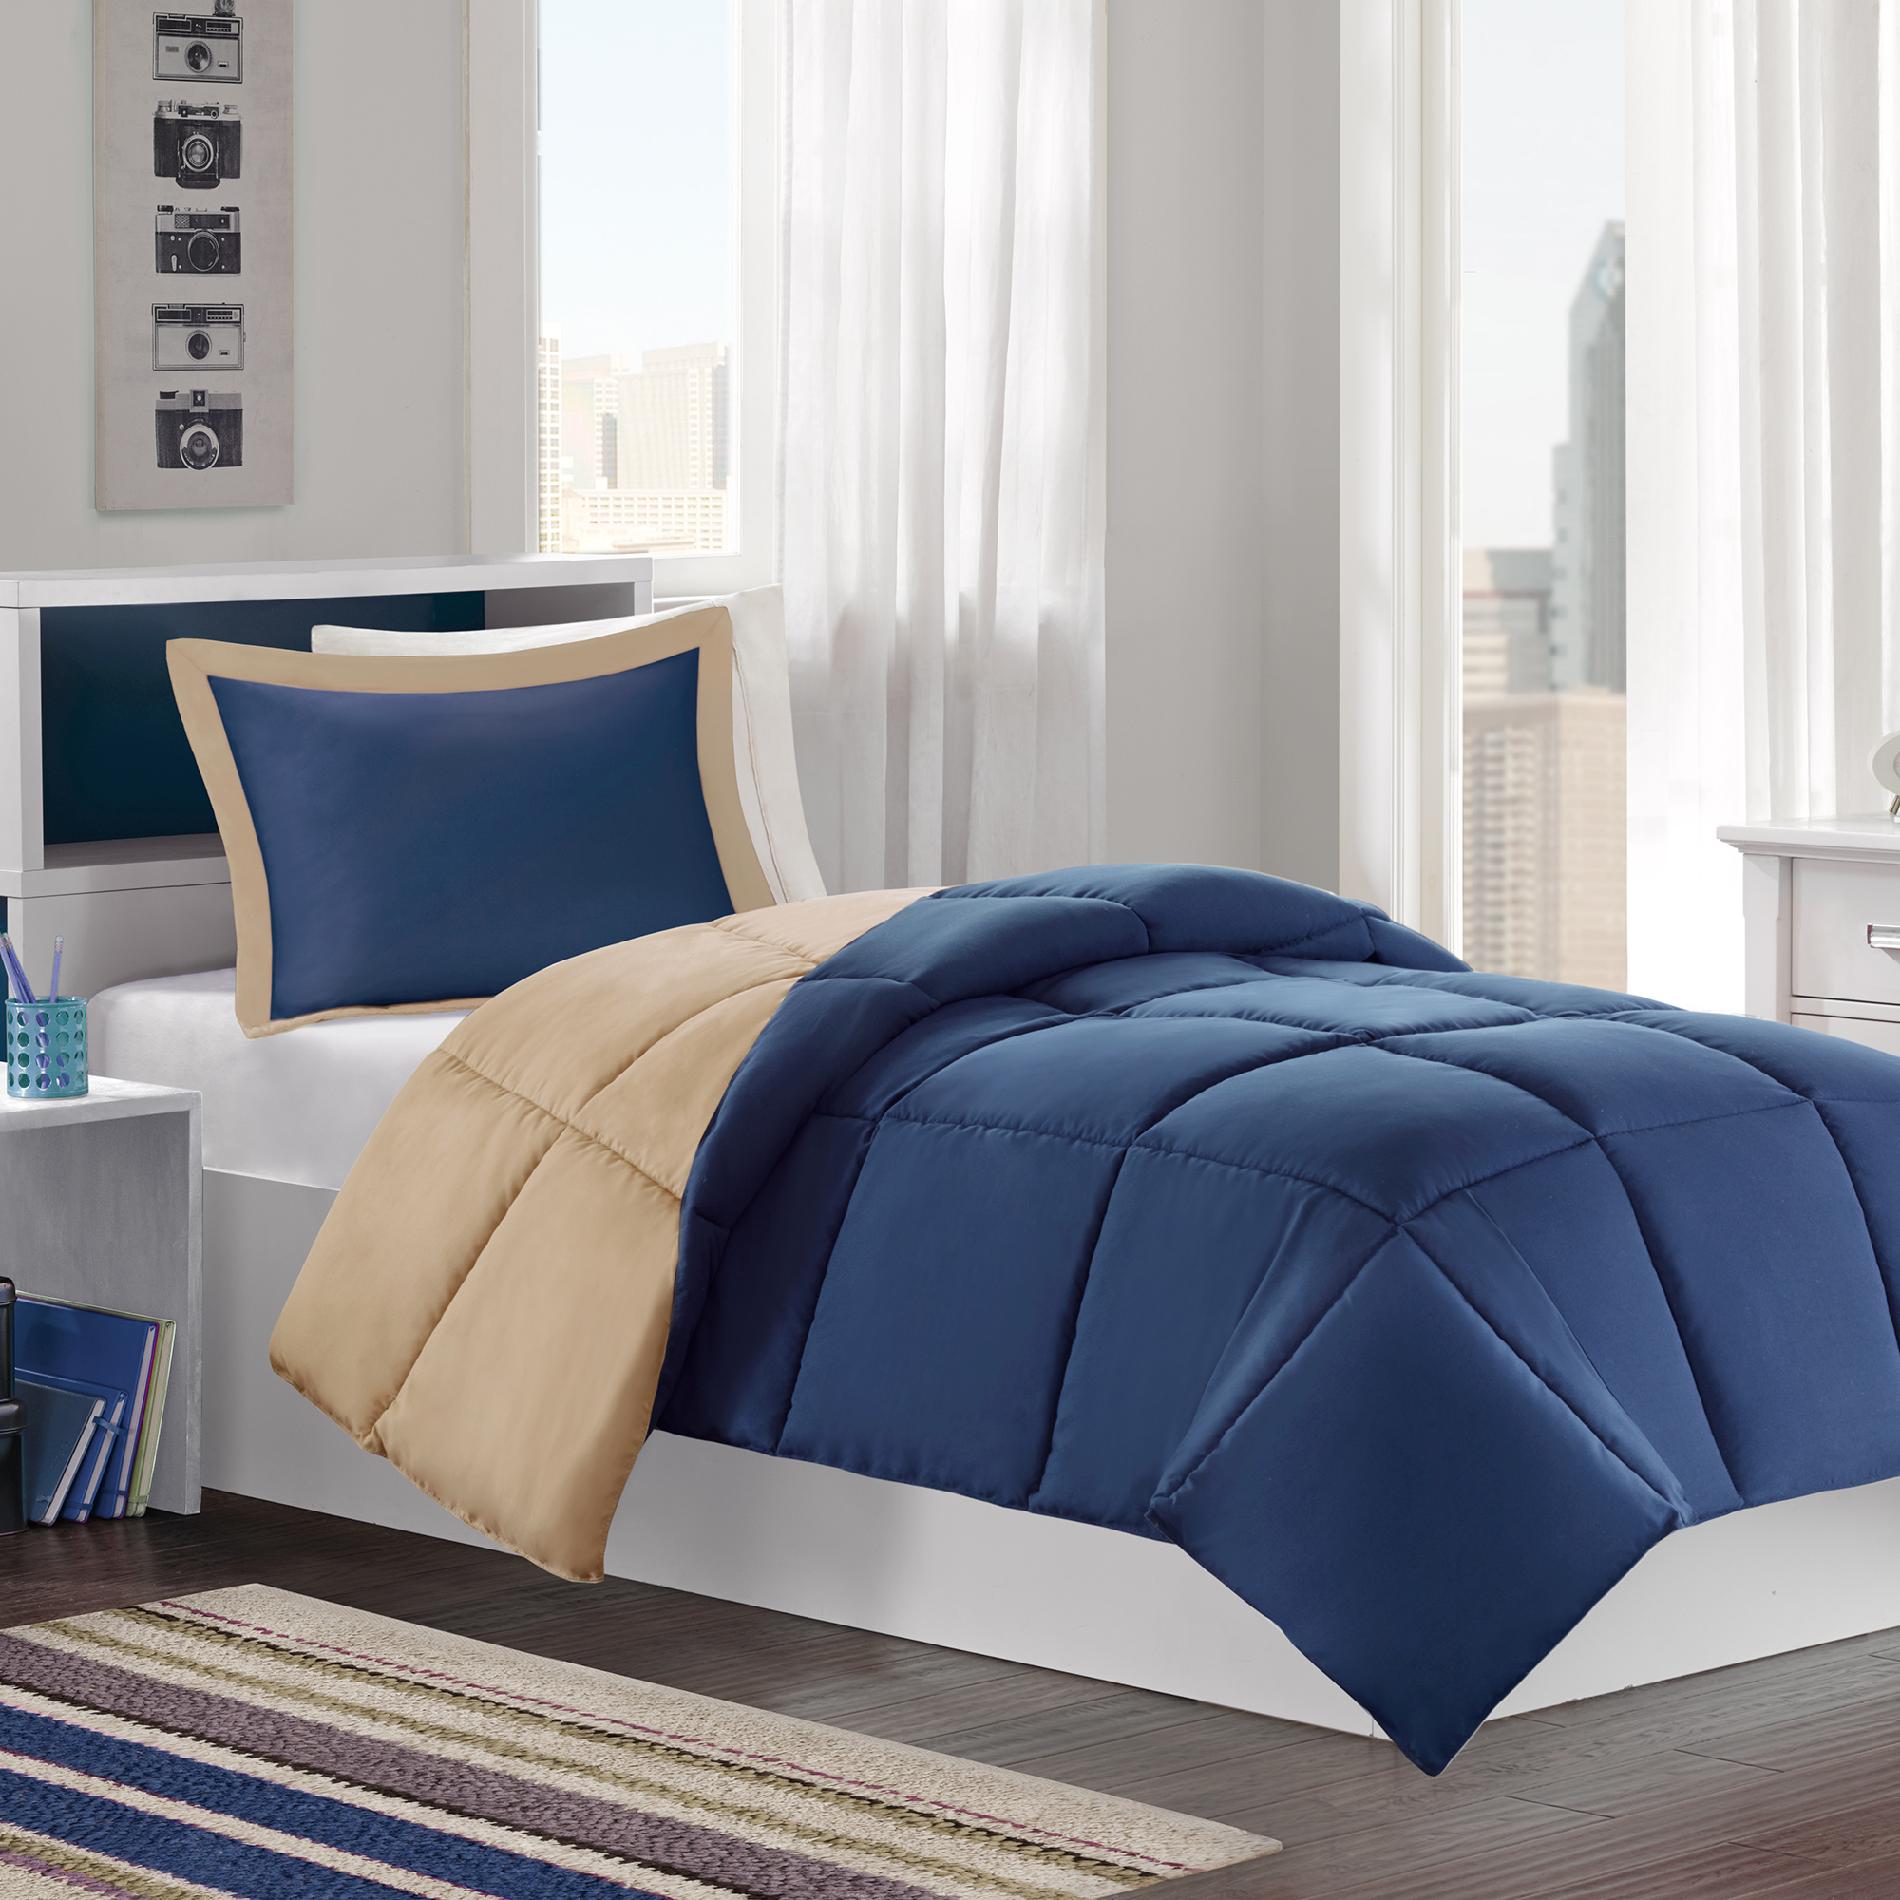 Colormate Navy/Khaki Reversible Mini Bed Set - 3 Pieces